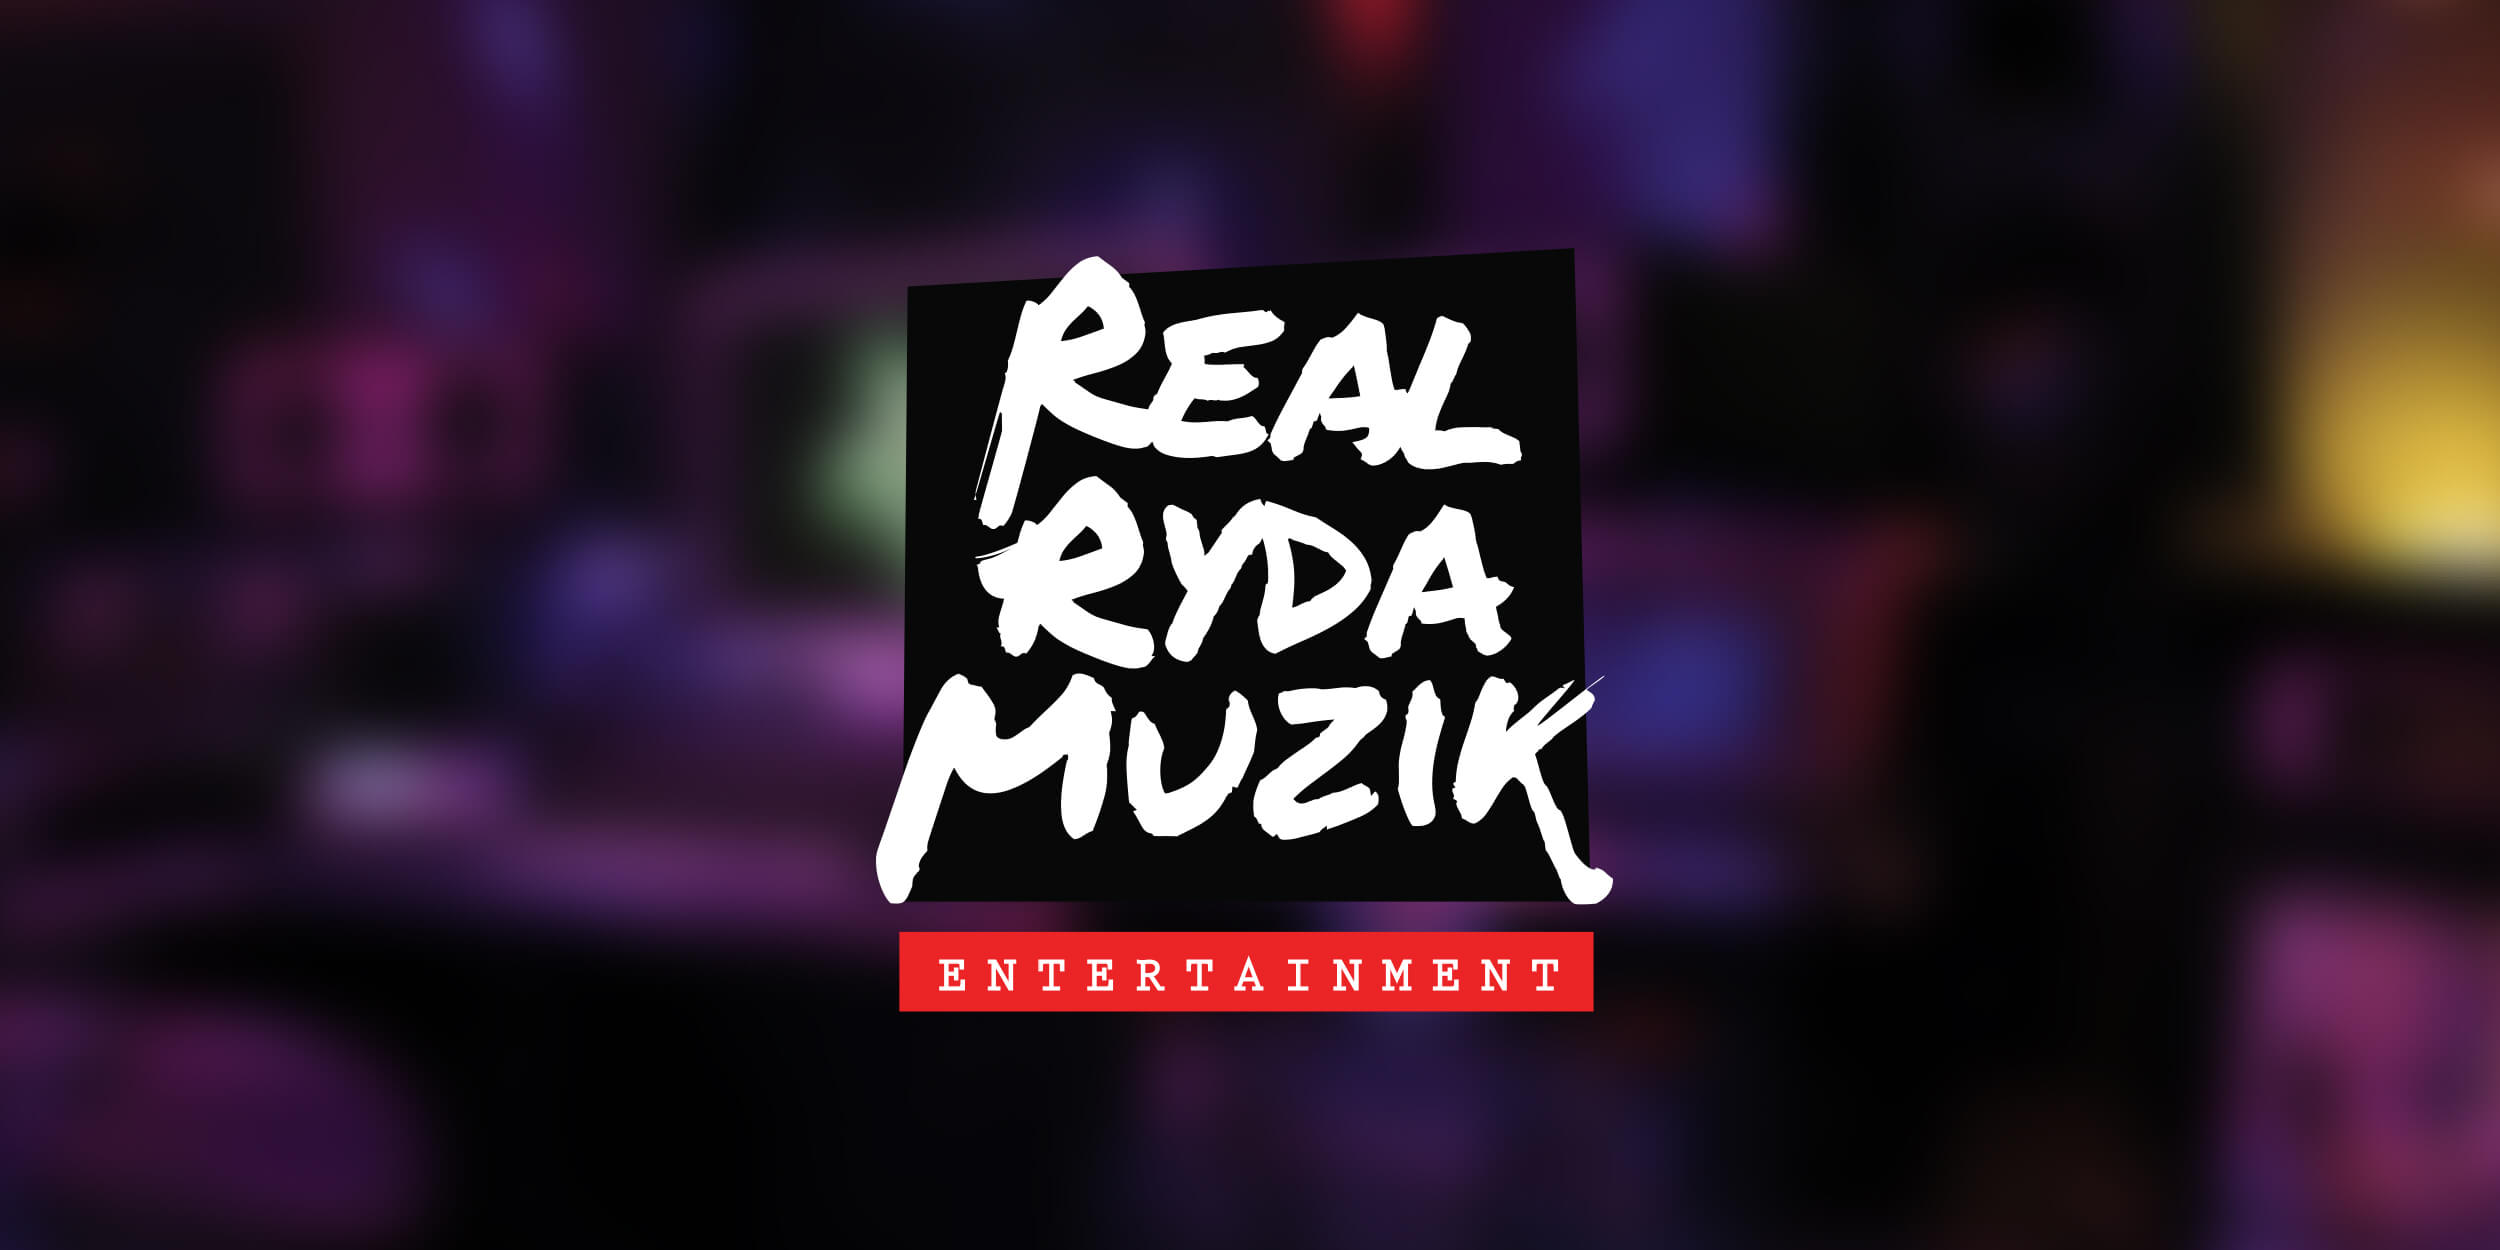 Real Ryda Muzik